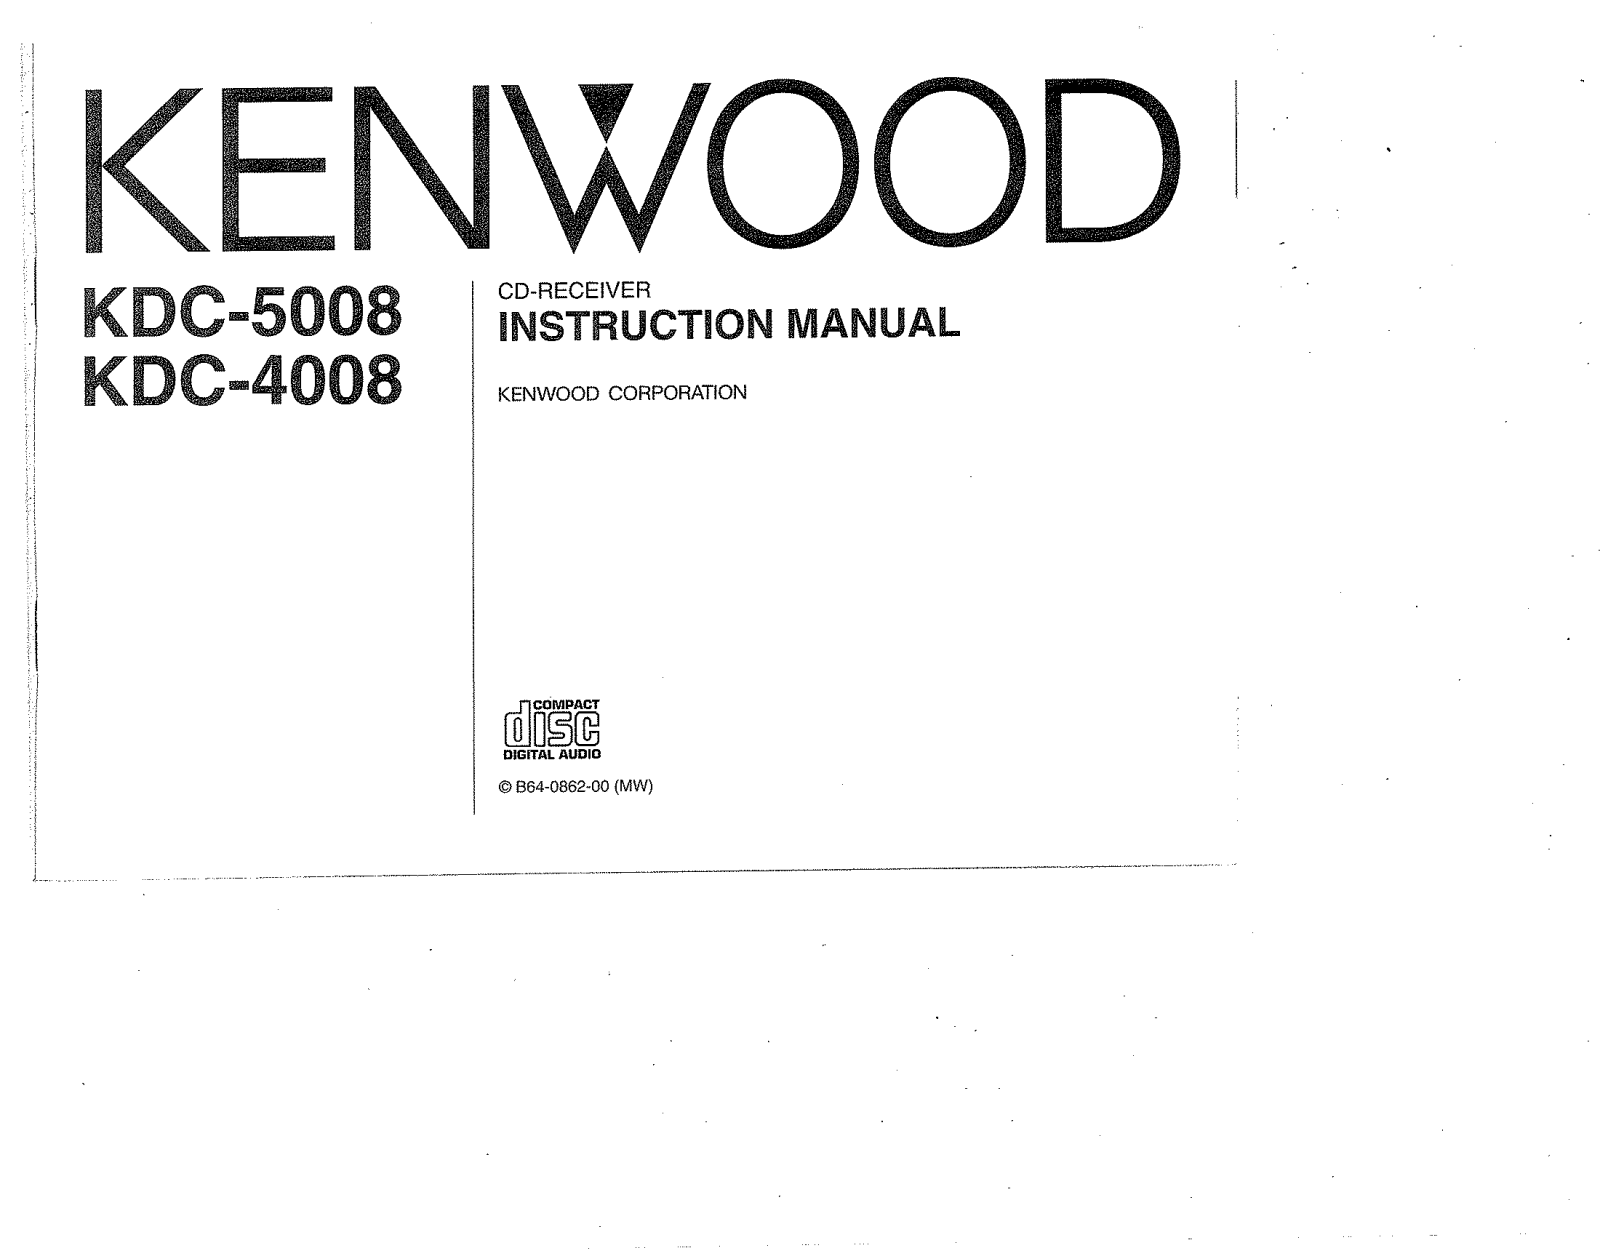 Kenwood KDC-5008, KDC-4008 Owner's Manual